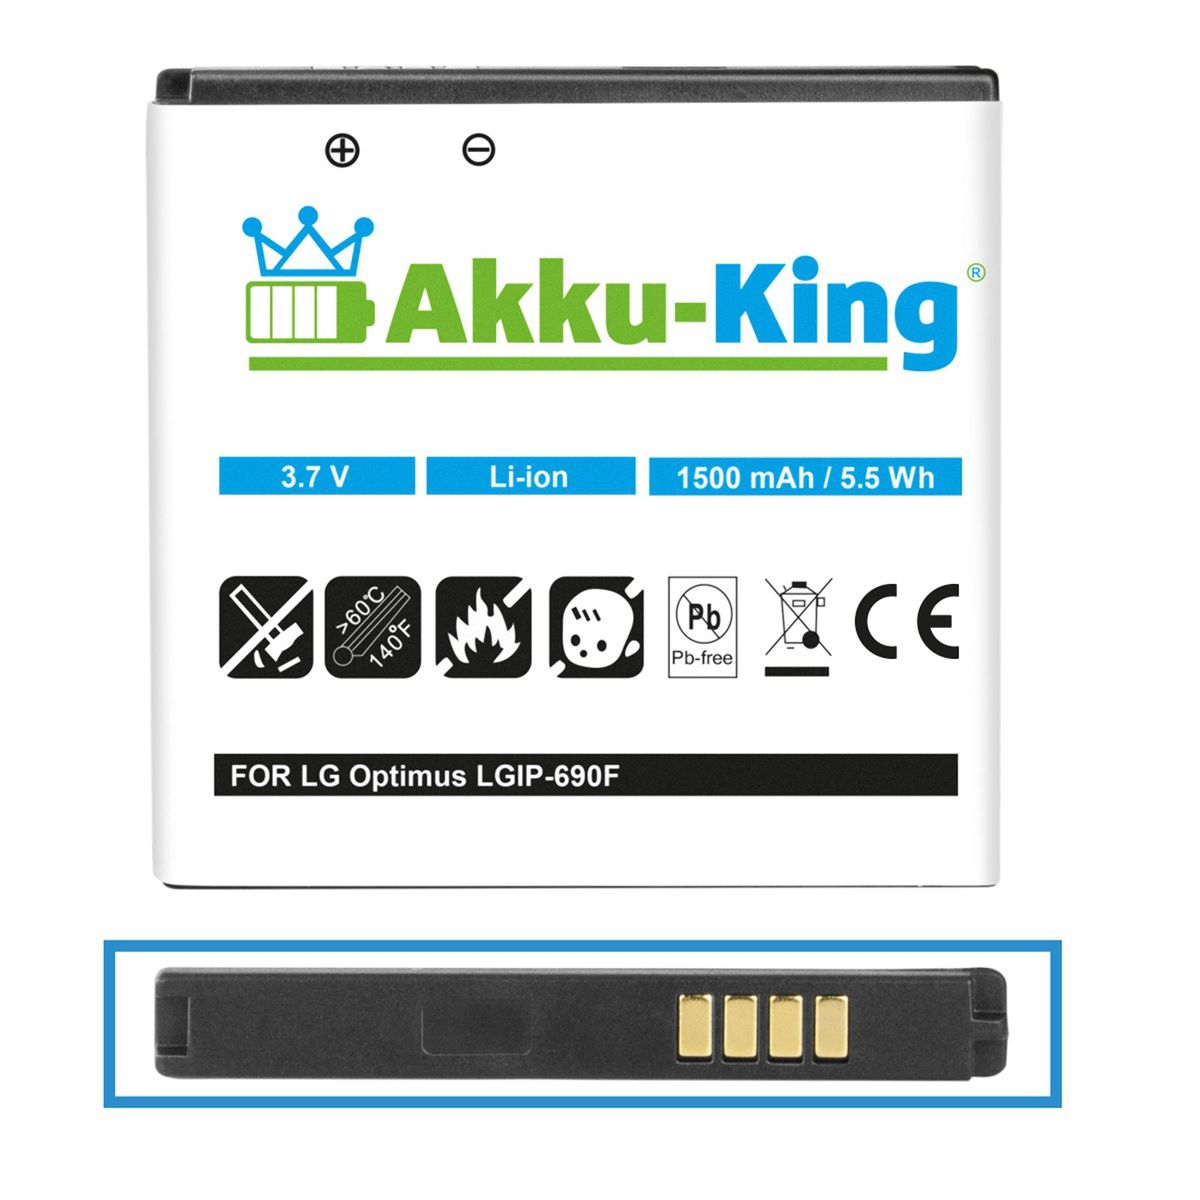 AKKU-KING Akku kompatibel 3.7 LG LGIP-690F 1500mAh Handy-Akku, Li-Ion mit Volt